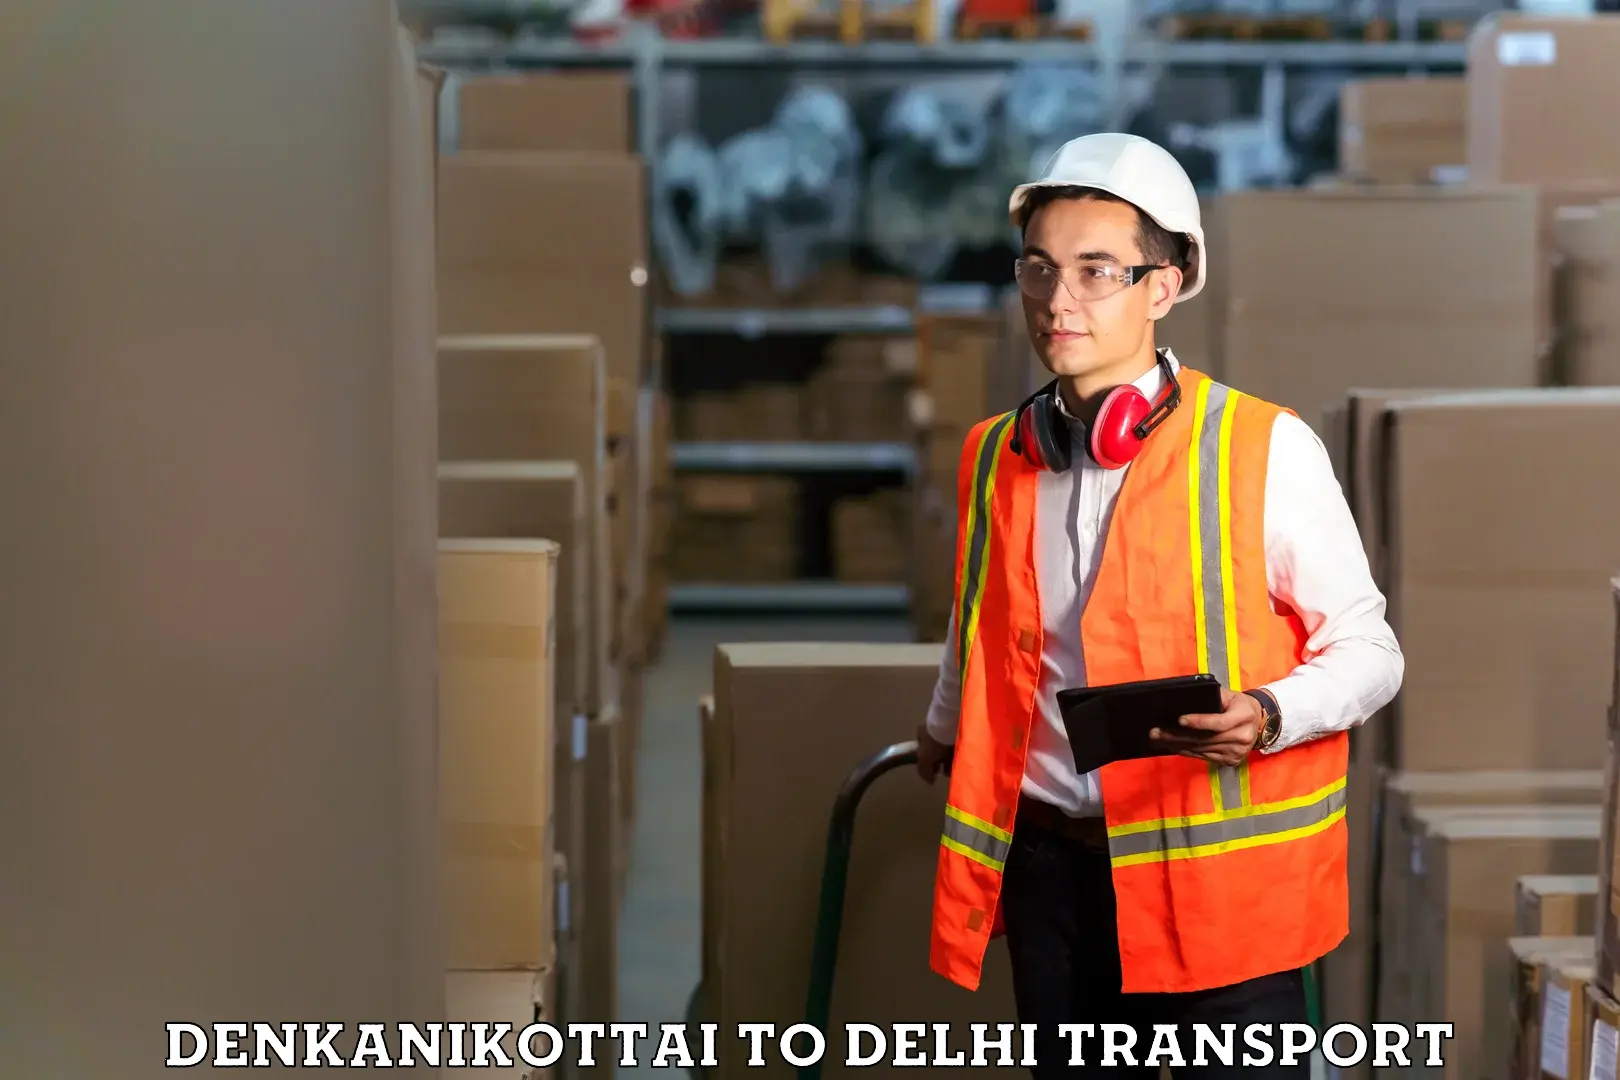 Lorry transport service Denkanikottai to Ashok Vihar